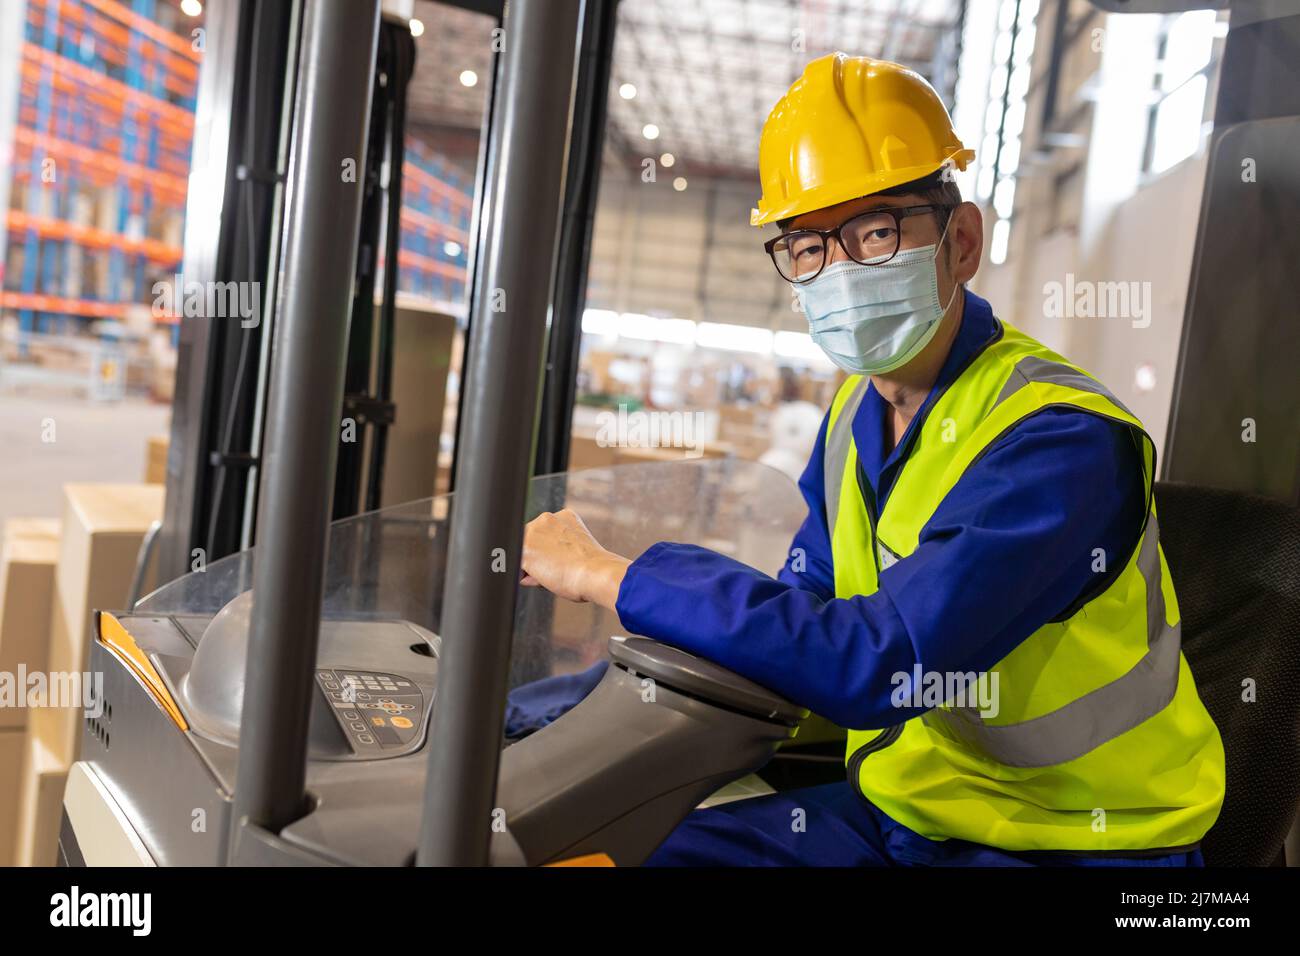 Retrato de trabajador masculino maduro asiático con máscara, chaleco reflectante y casco mientras conduce una carretilla elevadora Foto de stock